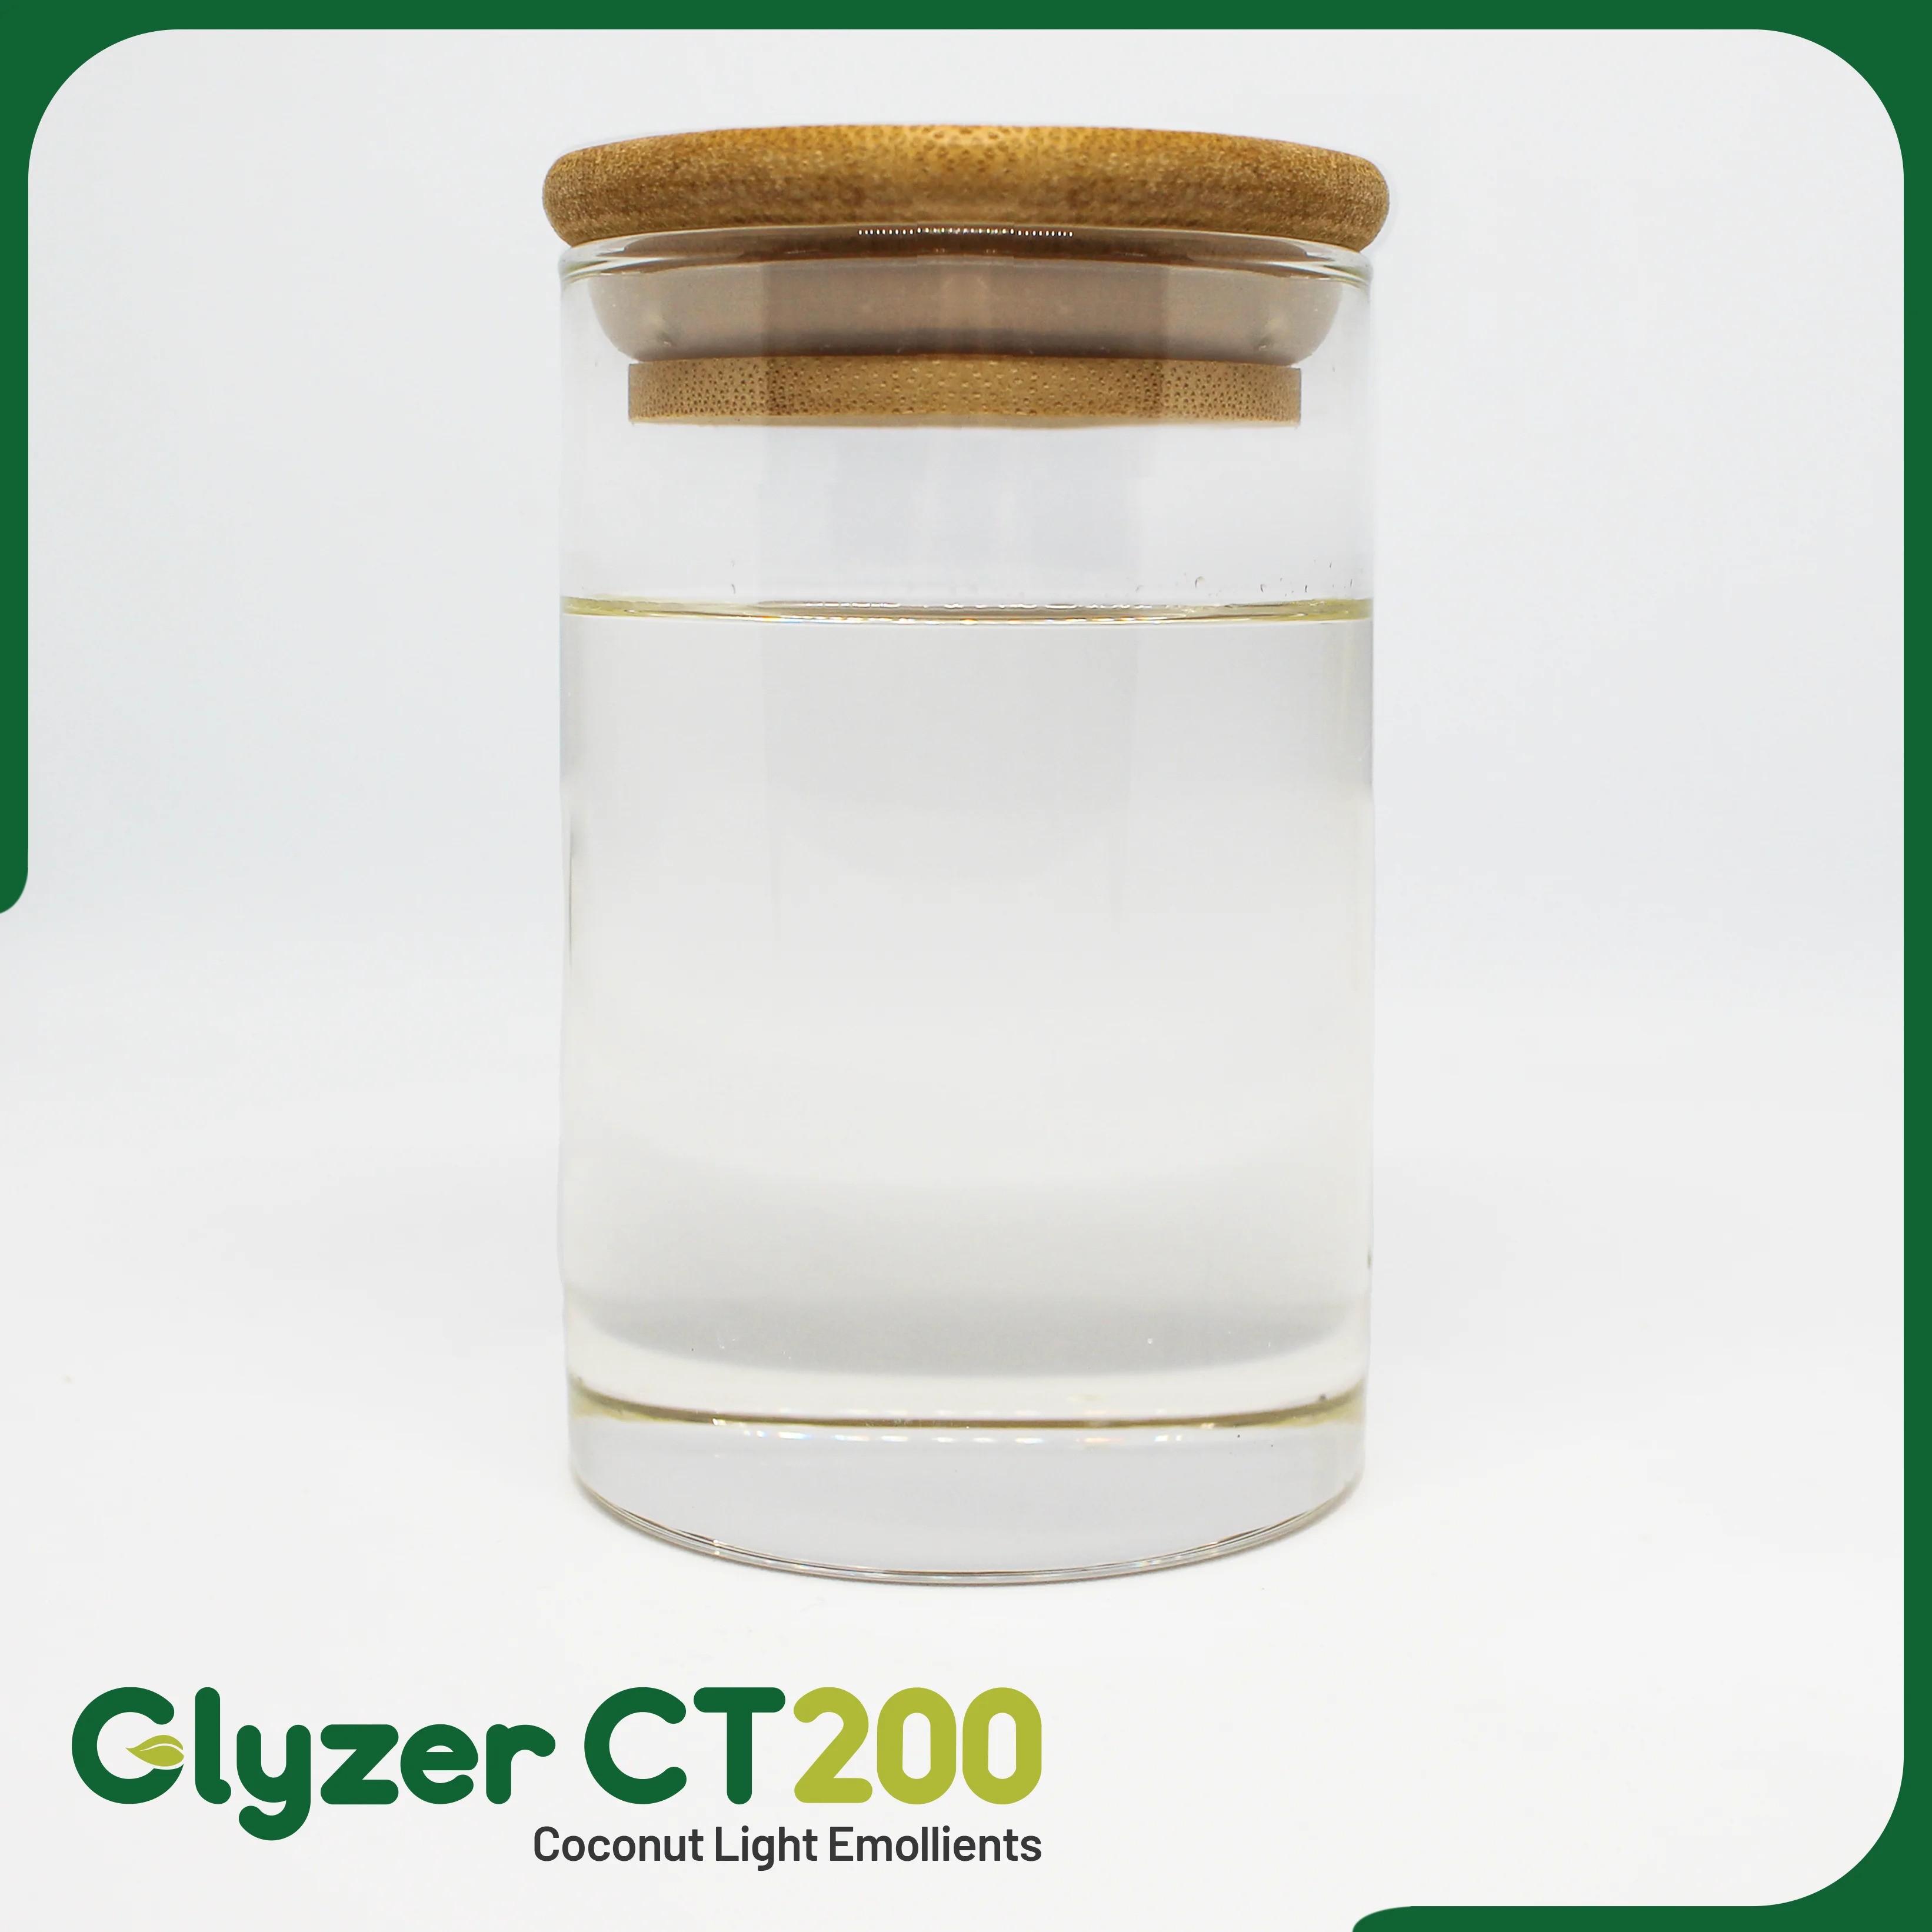 Glyzer CT200